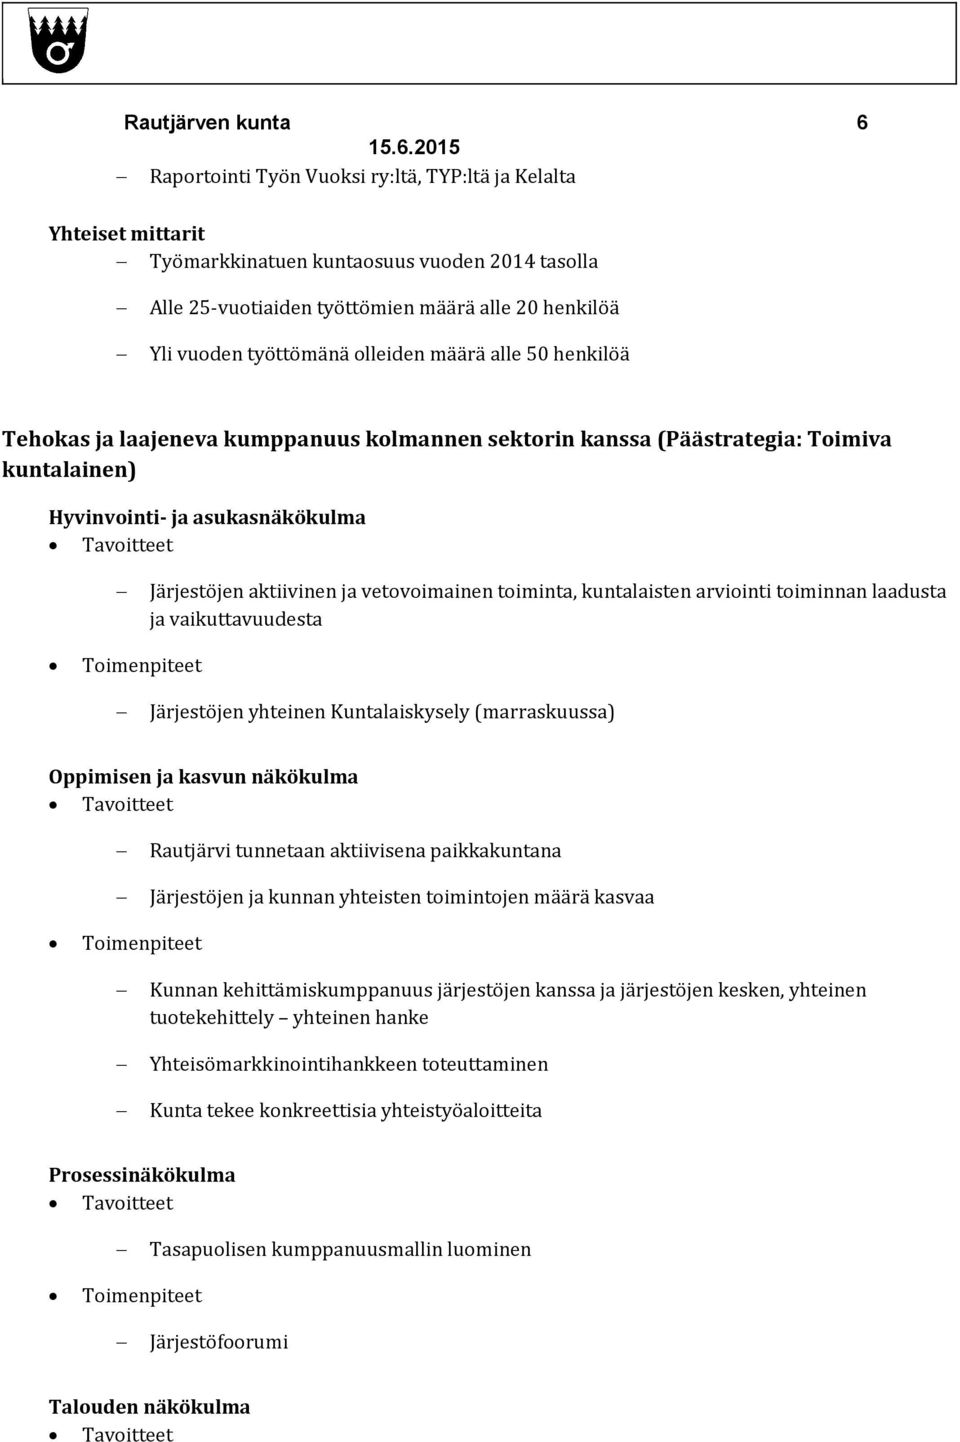 arviointi toiminnan laadusta ja vaikuttavuudesta Järjestöjen yhteinen Kuntalaiskysely (marraskuussa) Tavoitteet Rautjärvi tunnetaan aktiivisena paikkakuntana Järjestöjen ja kunnan yhteisten